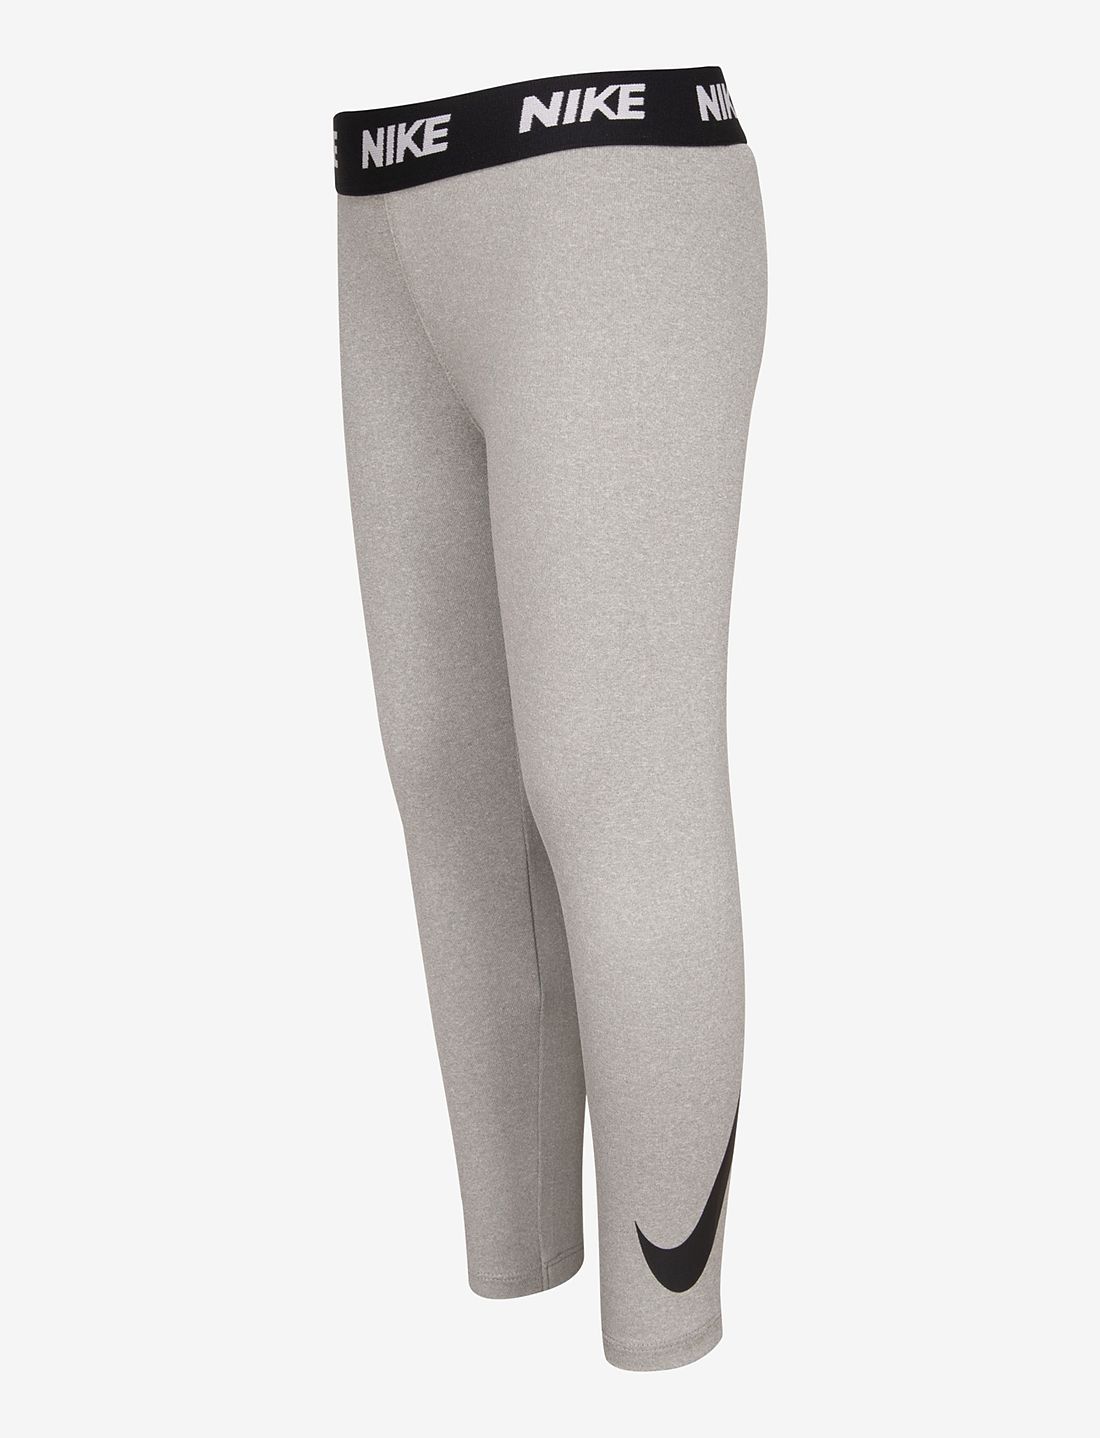 Nike Dri Fit Sport Essentials Swoosh Legging / Nkg Sport Essent P – bottoms  – shop at Booztlet